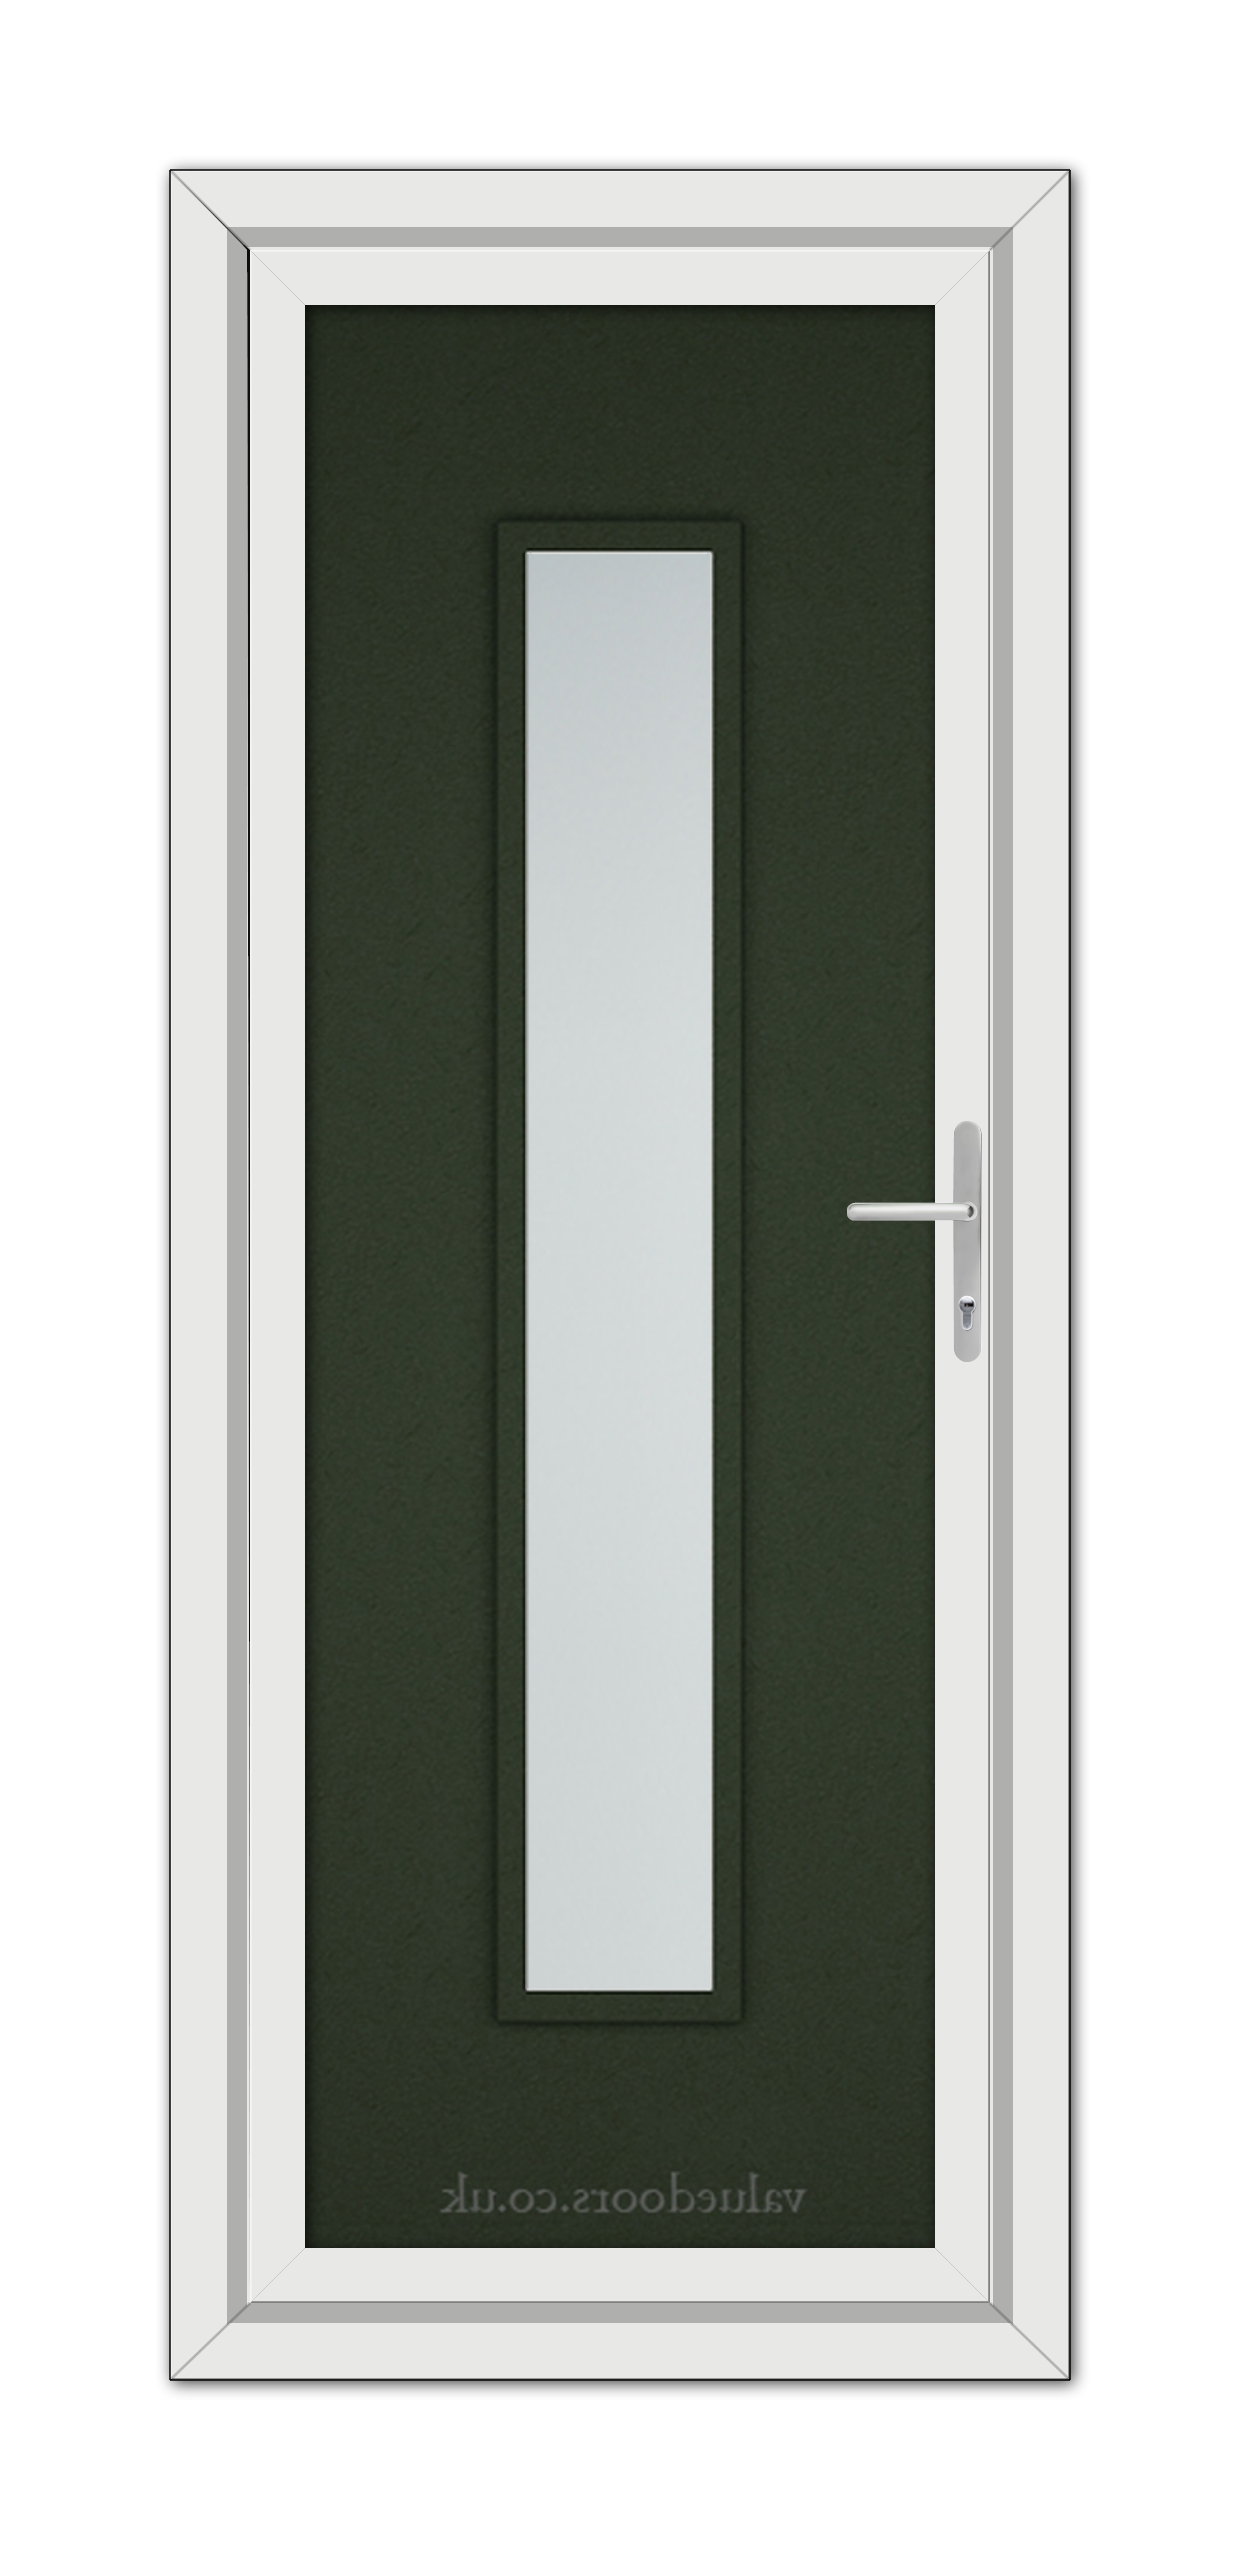 A close-up of a Green Modern 5101 uPVC Door.